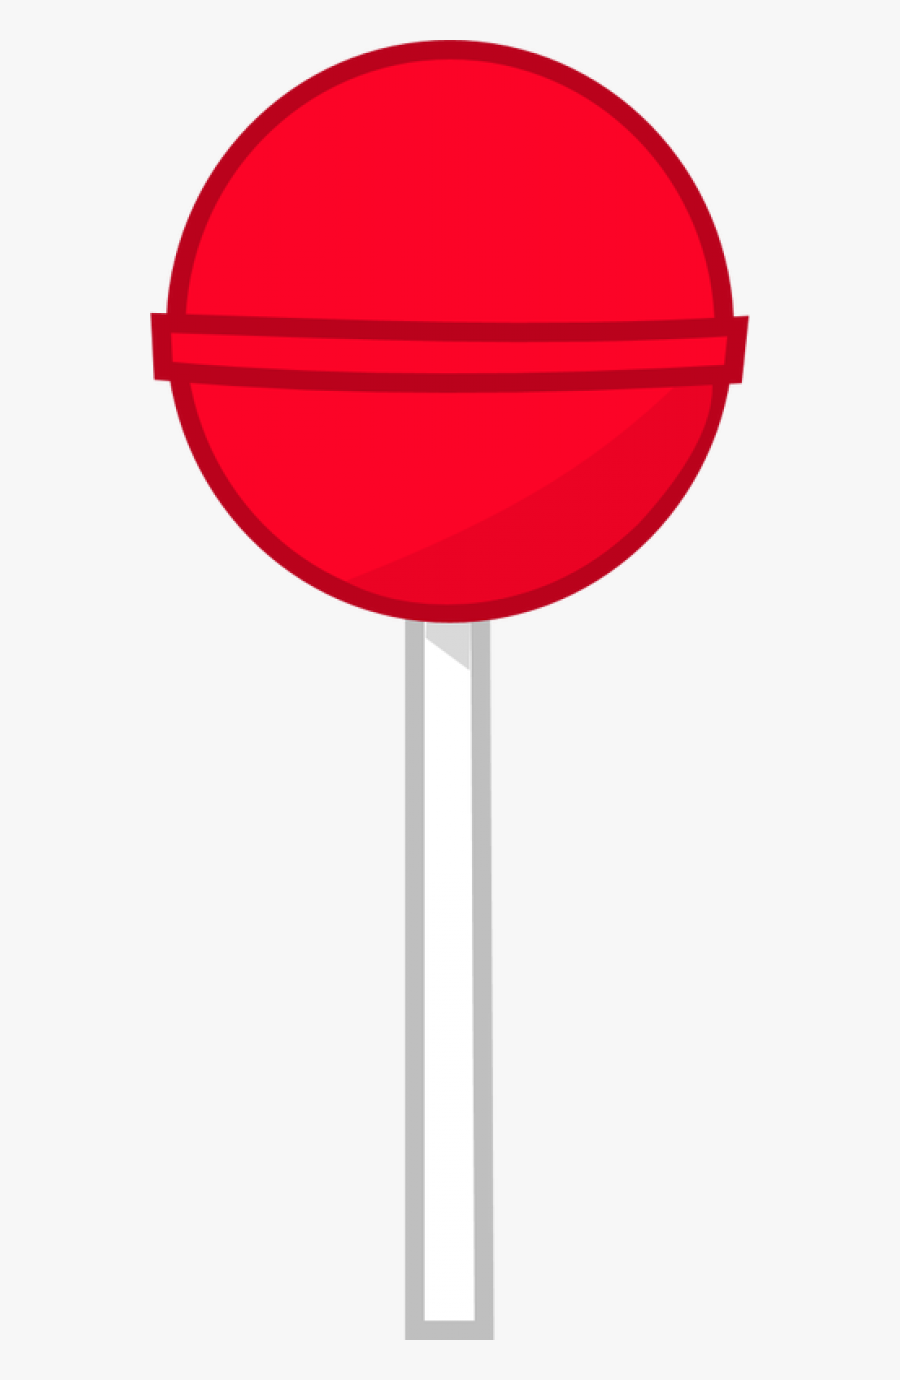 Lollipop Png Free Download - Object Land Lollipop, Transparent Clipart